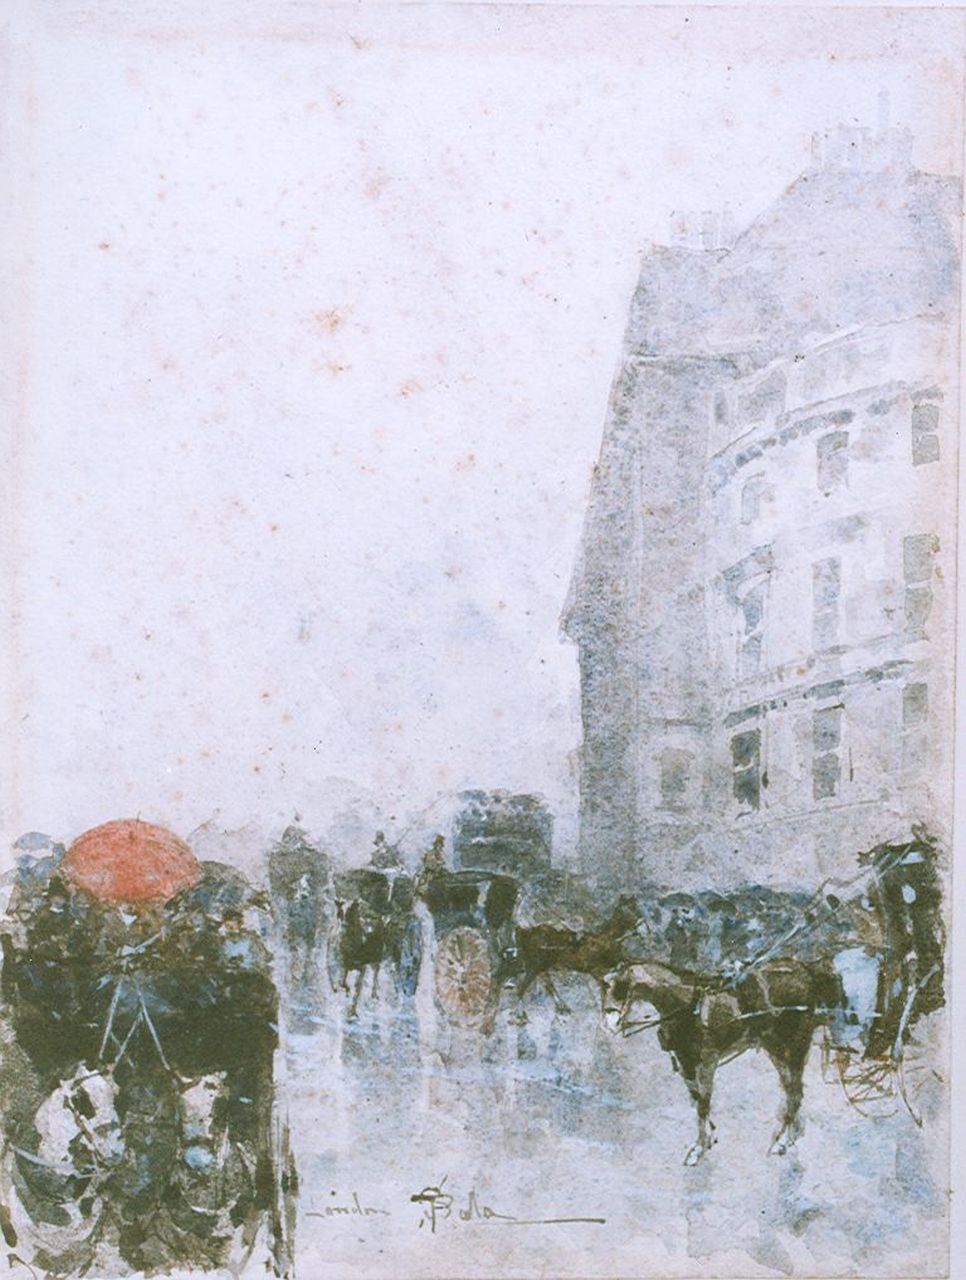 Sala P.  | Paolo Sala, Paardekoetsen in Londen, aquarel op papier 25,3 x 19,1 cm, gesigneerd middenonder